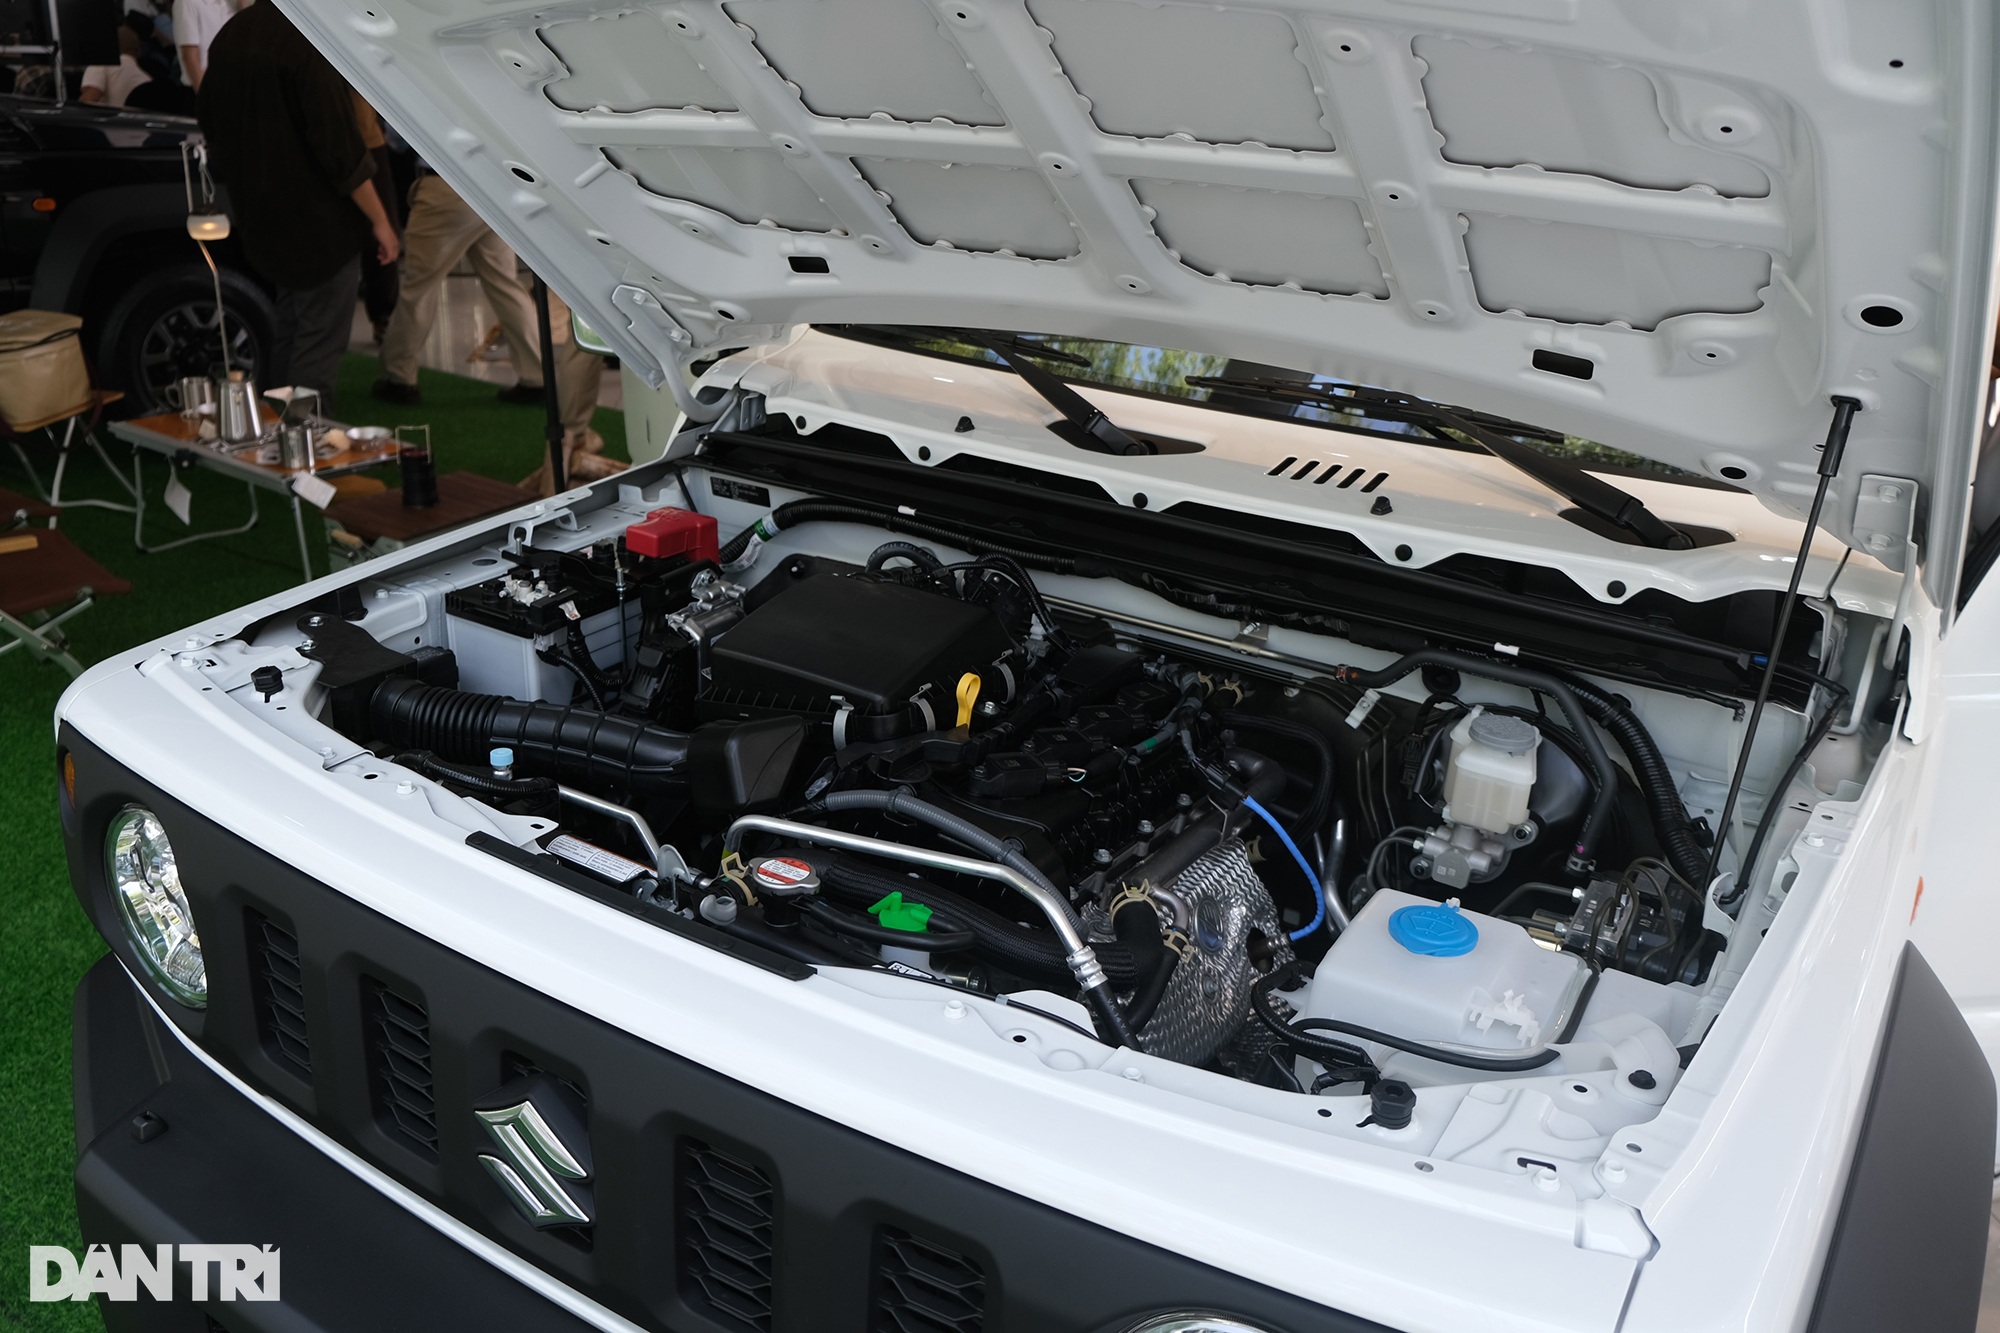 View - Chốt giá từ 789 triệu đồng, "xe ăn chơi" Suzuki Jimny có gì đặc biệt? | Báo Dân trí